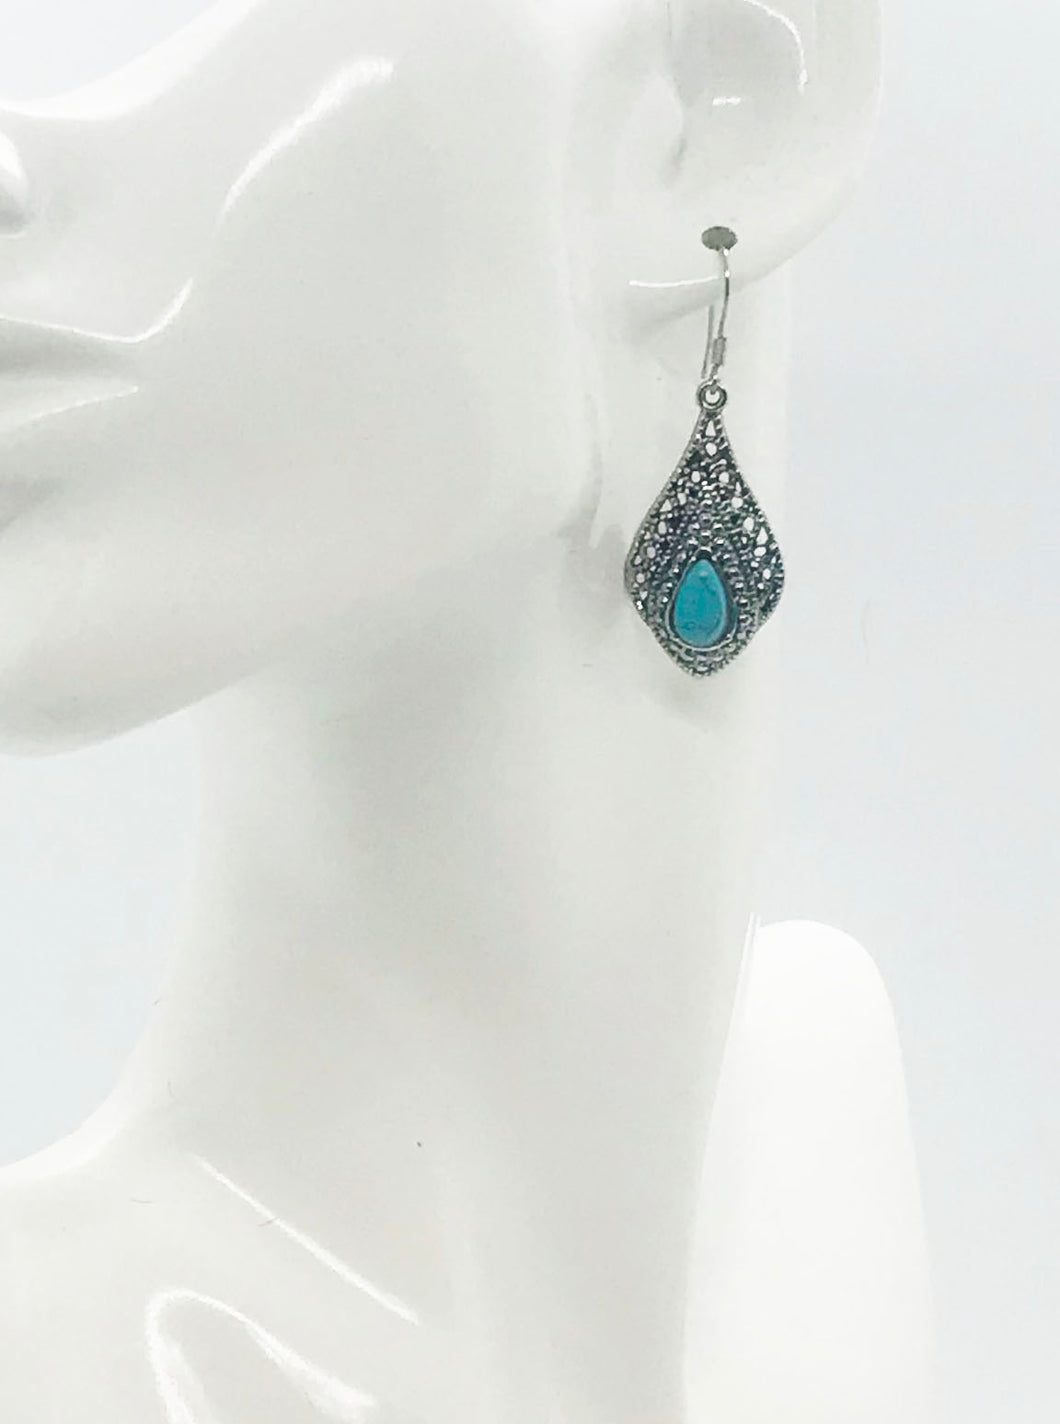 Turquoise Dangle Earrings - E19-2292